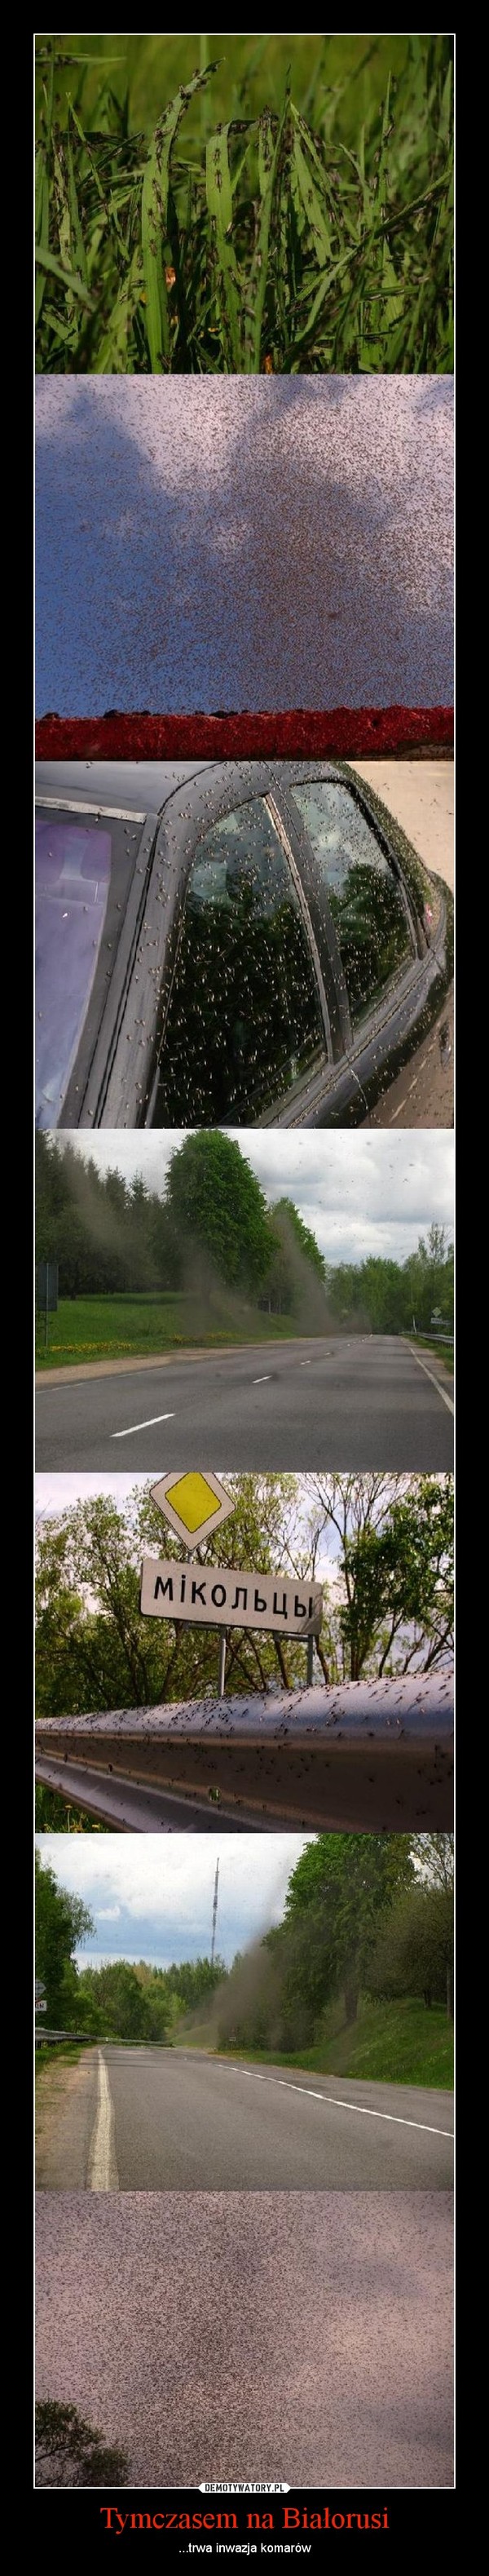 Tymczasem na Białorusi – ...trwa inwazja komarów 